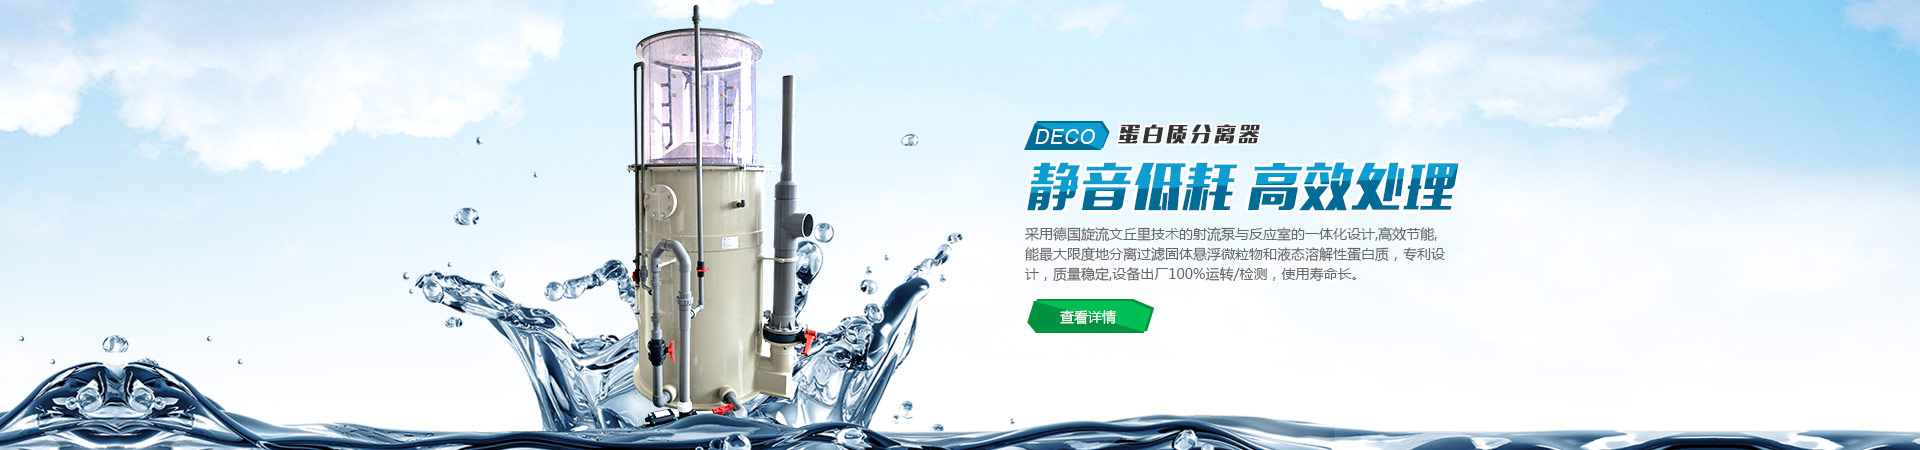 南京宝威干燥机械设备厂销售部